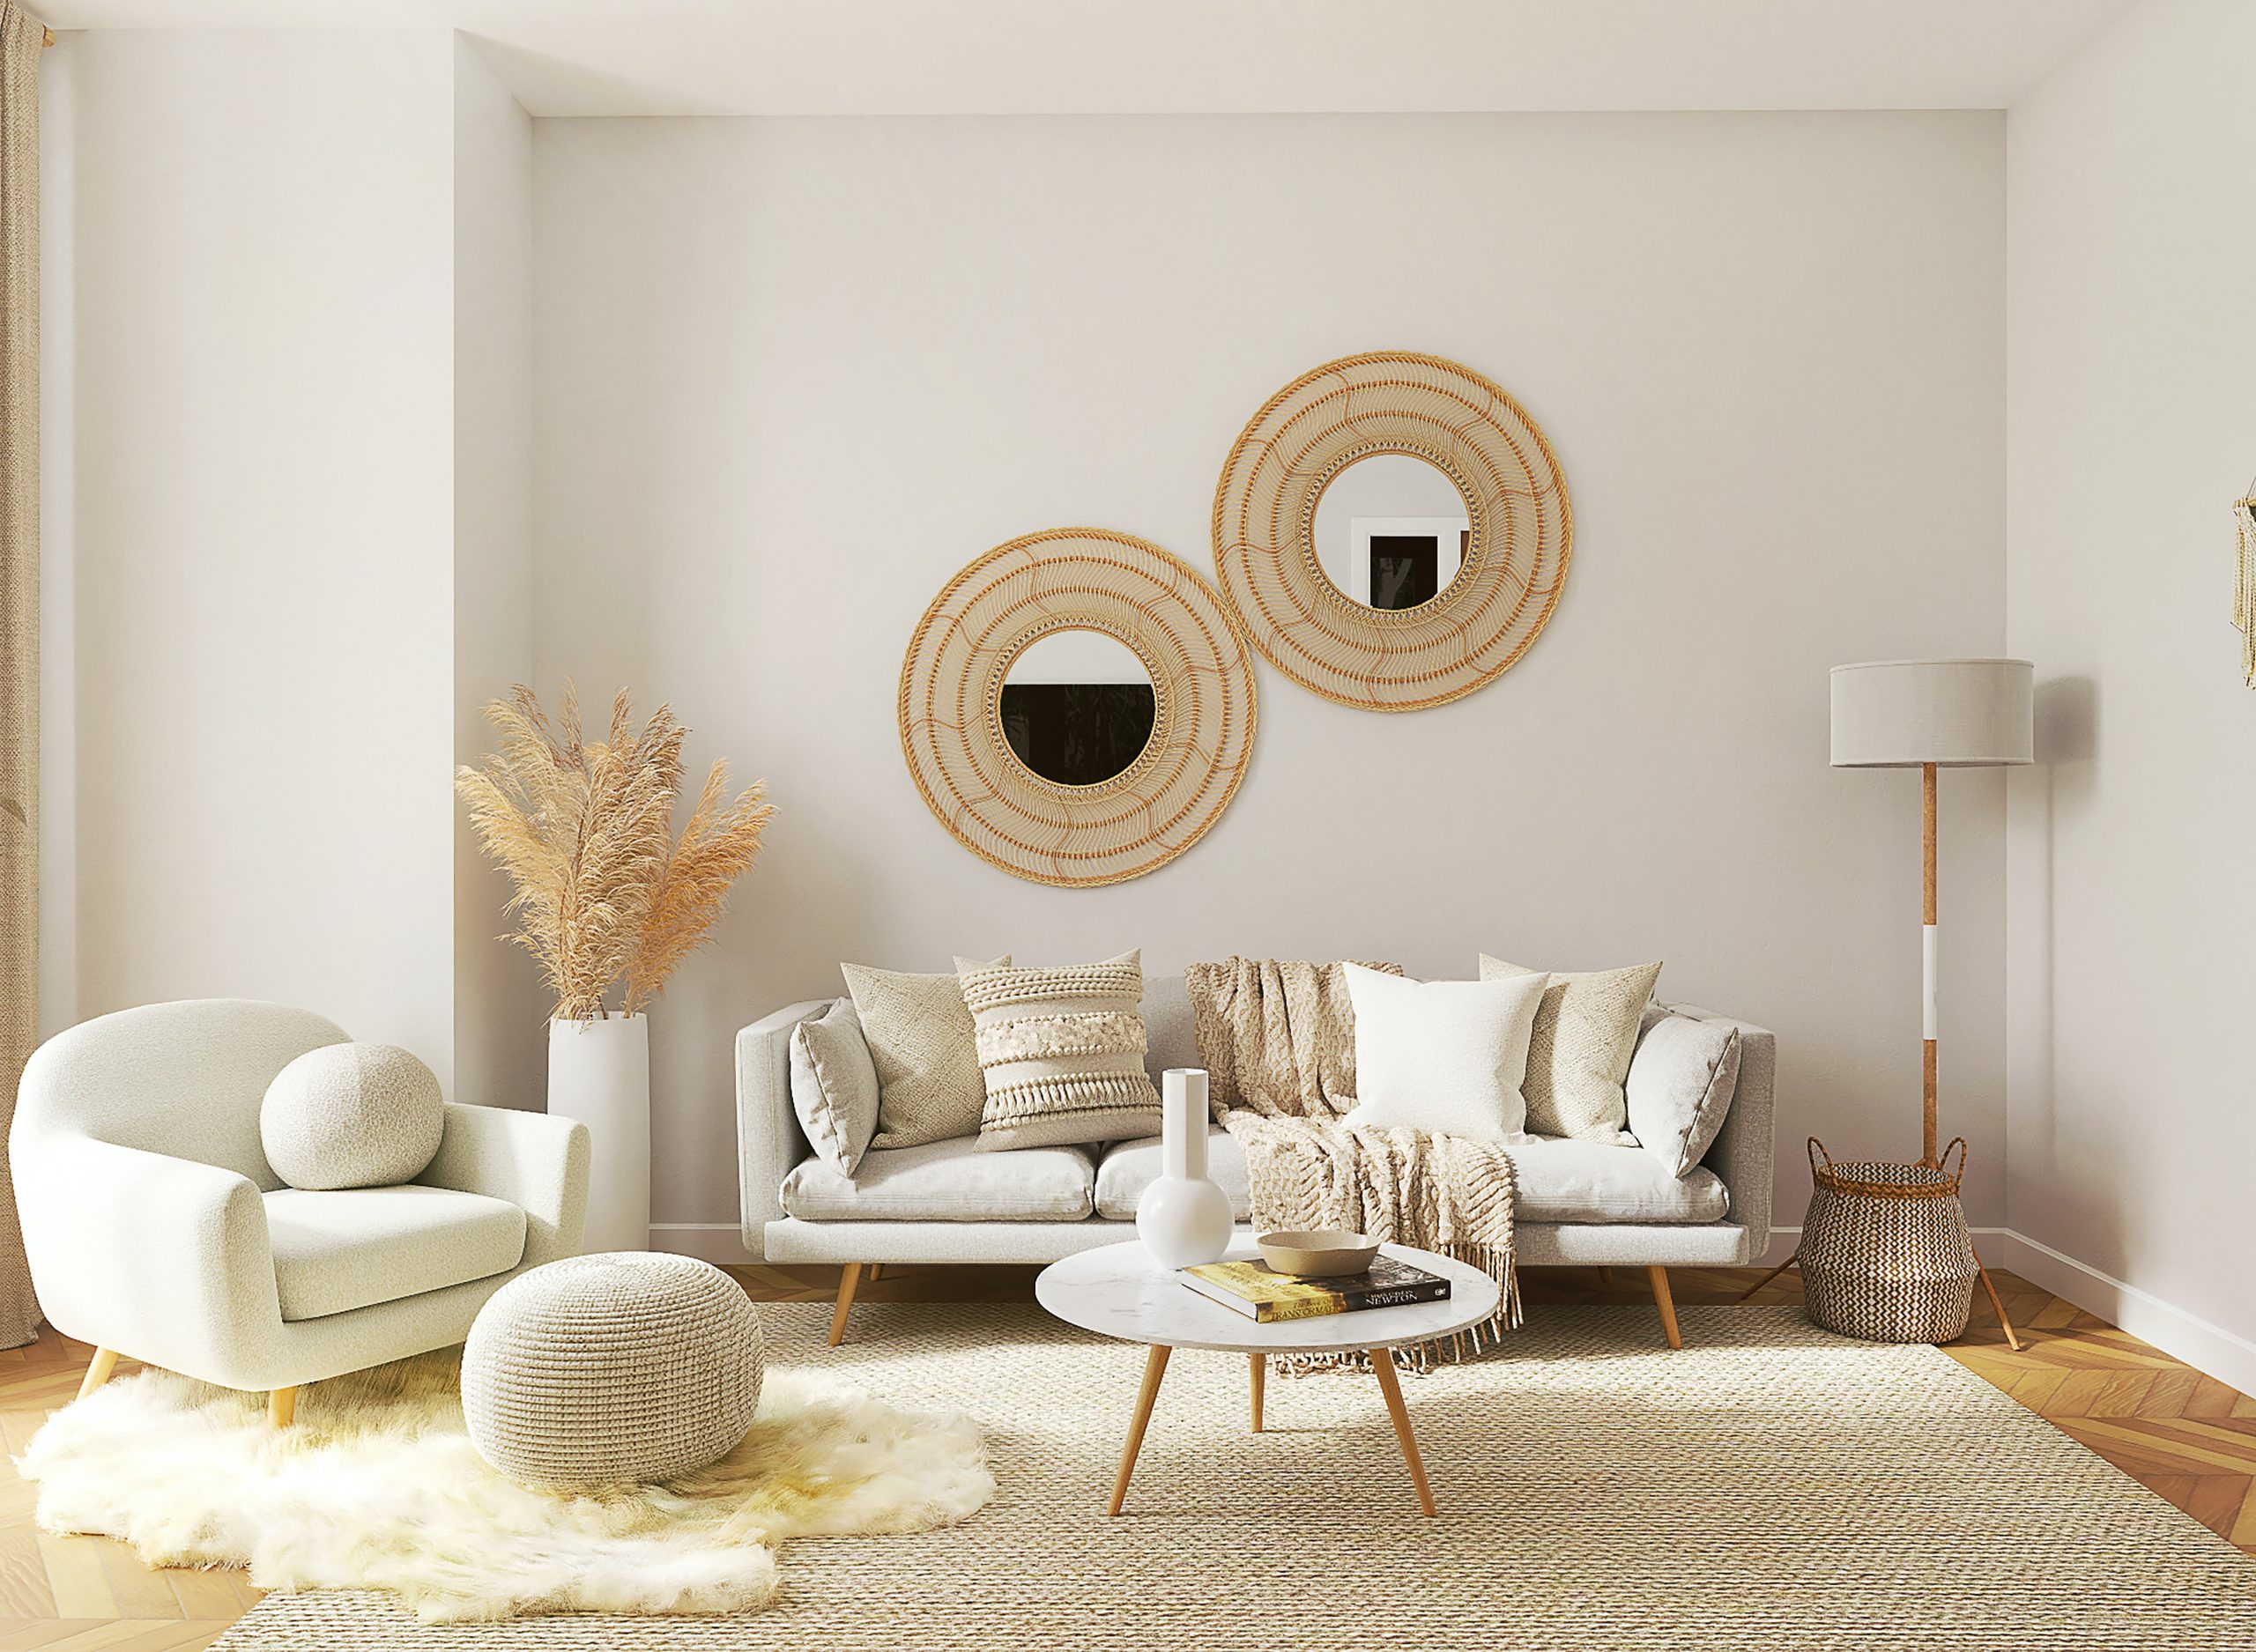 Wohnzimmermöbel-Sets UK – Welche sind die besten?